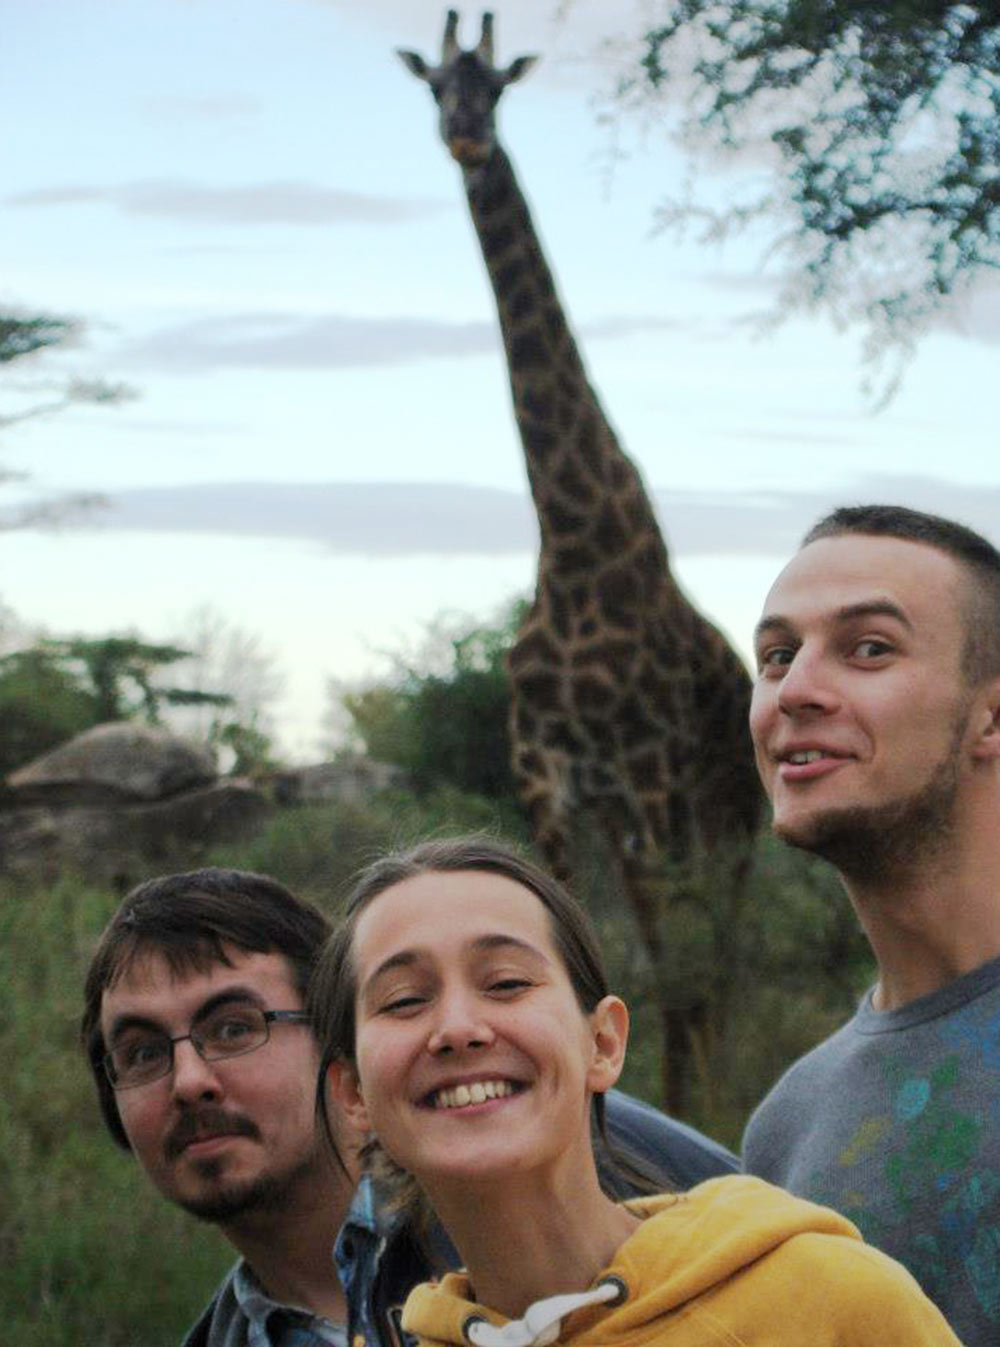 Жираф в кемпинге посреди Серенгети. Мы старательно тянем шеи, чтобы на него походить, а жираф выглядит заинтересованным. Между нами и им всего метров 10⁠—⁠15 и никакой ограды. Тогда я узнала, что жирафы очень доброжелательны и не опасны. Все равно быть так близко страшновато